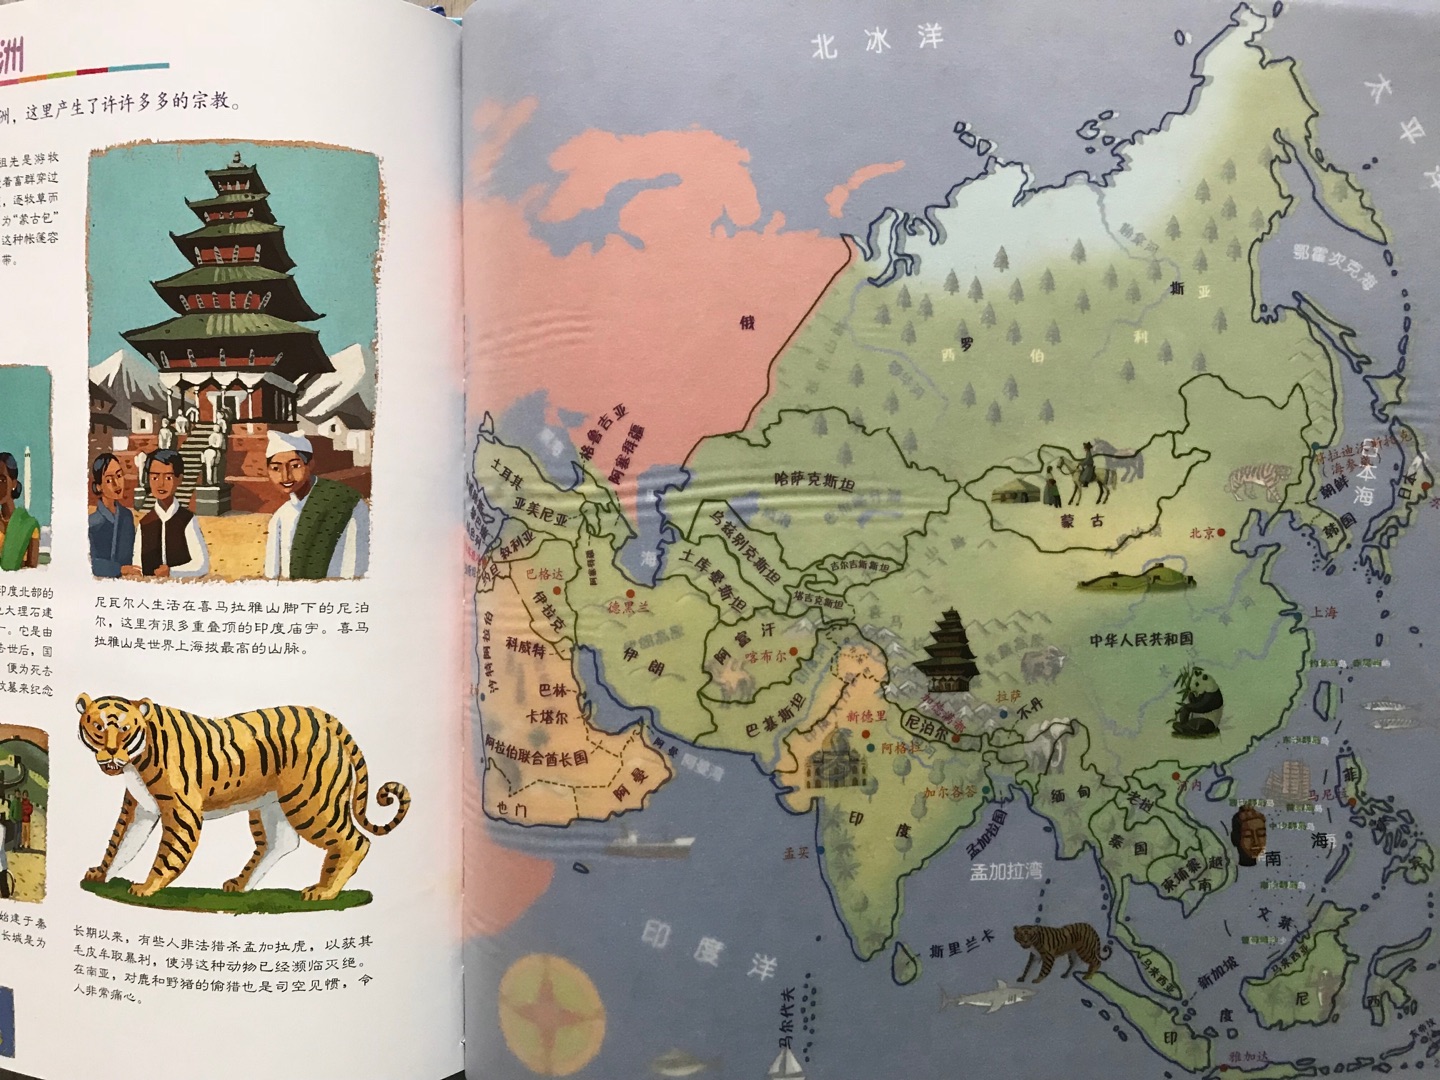 基于地图的百科，有动物、恐龙、旅行、宇宙四个主题，知识比较简单适合低龄孩子当作绘本读